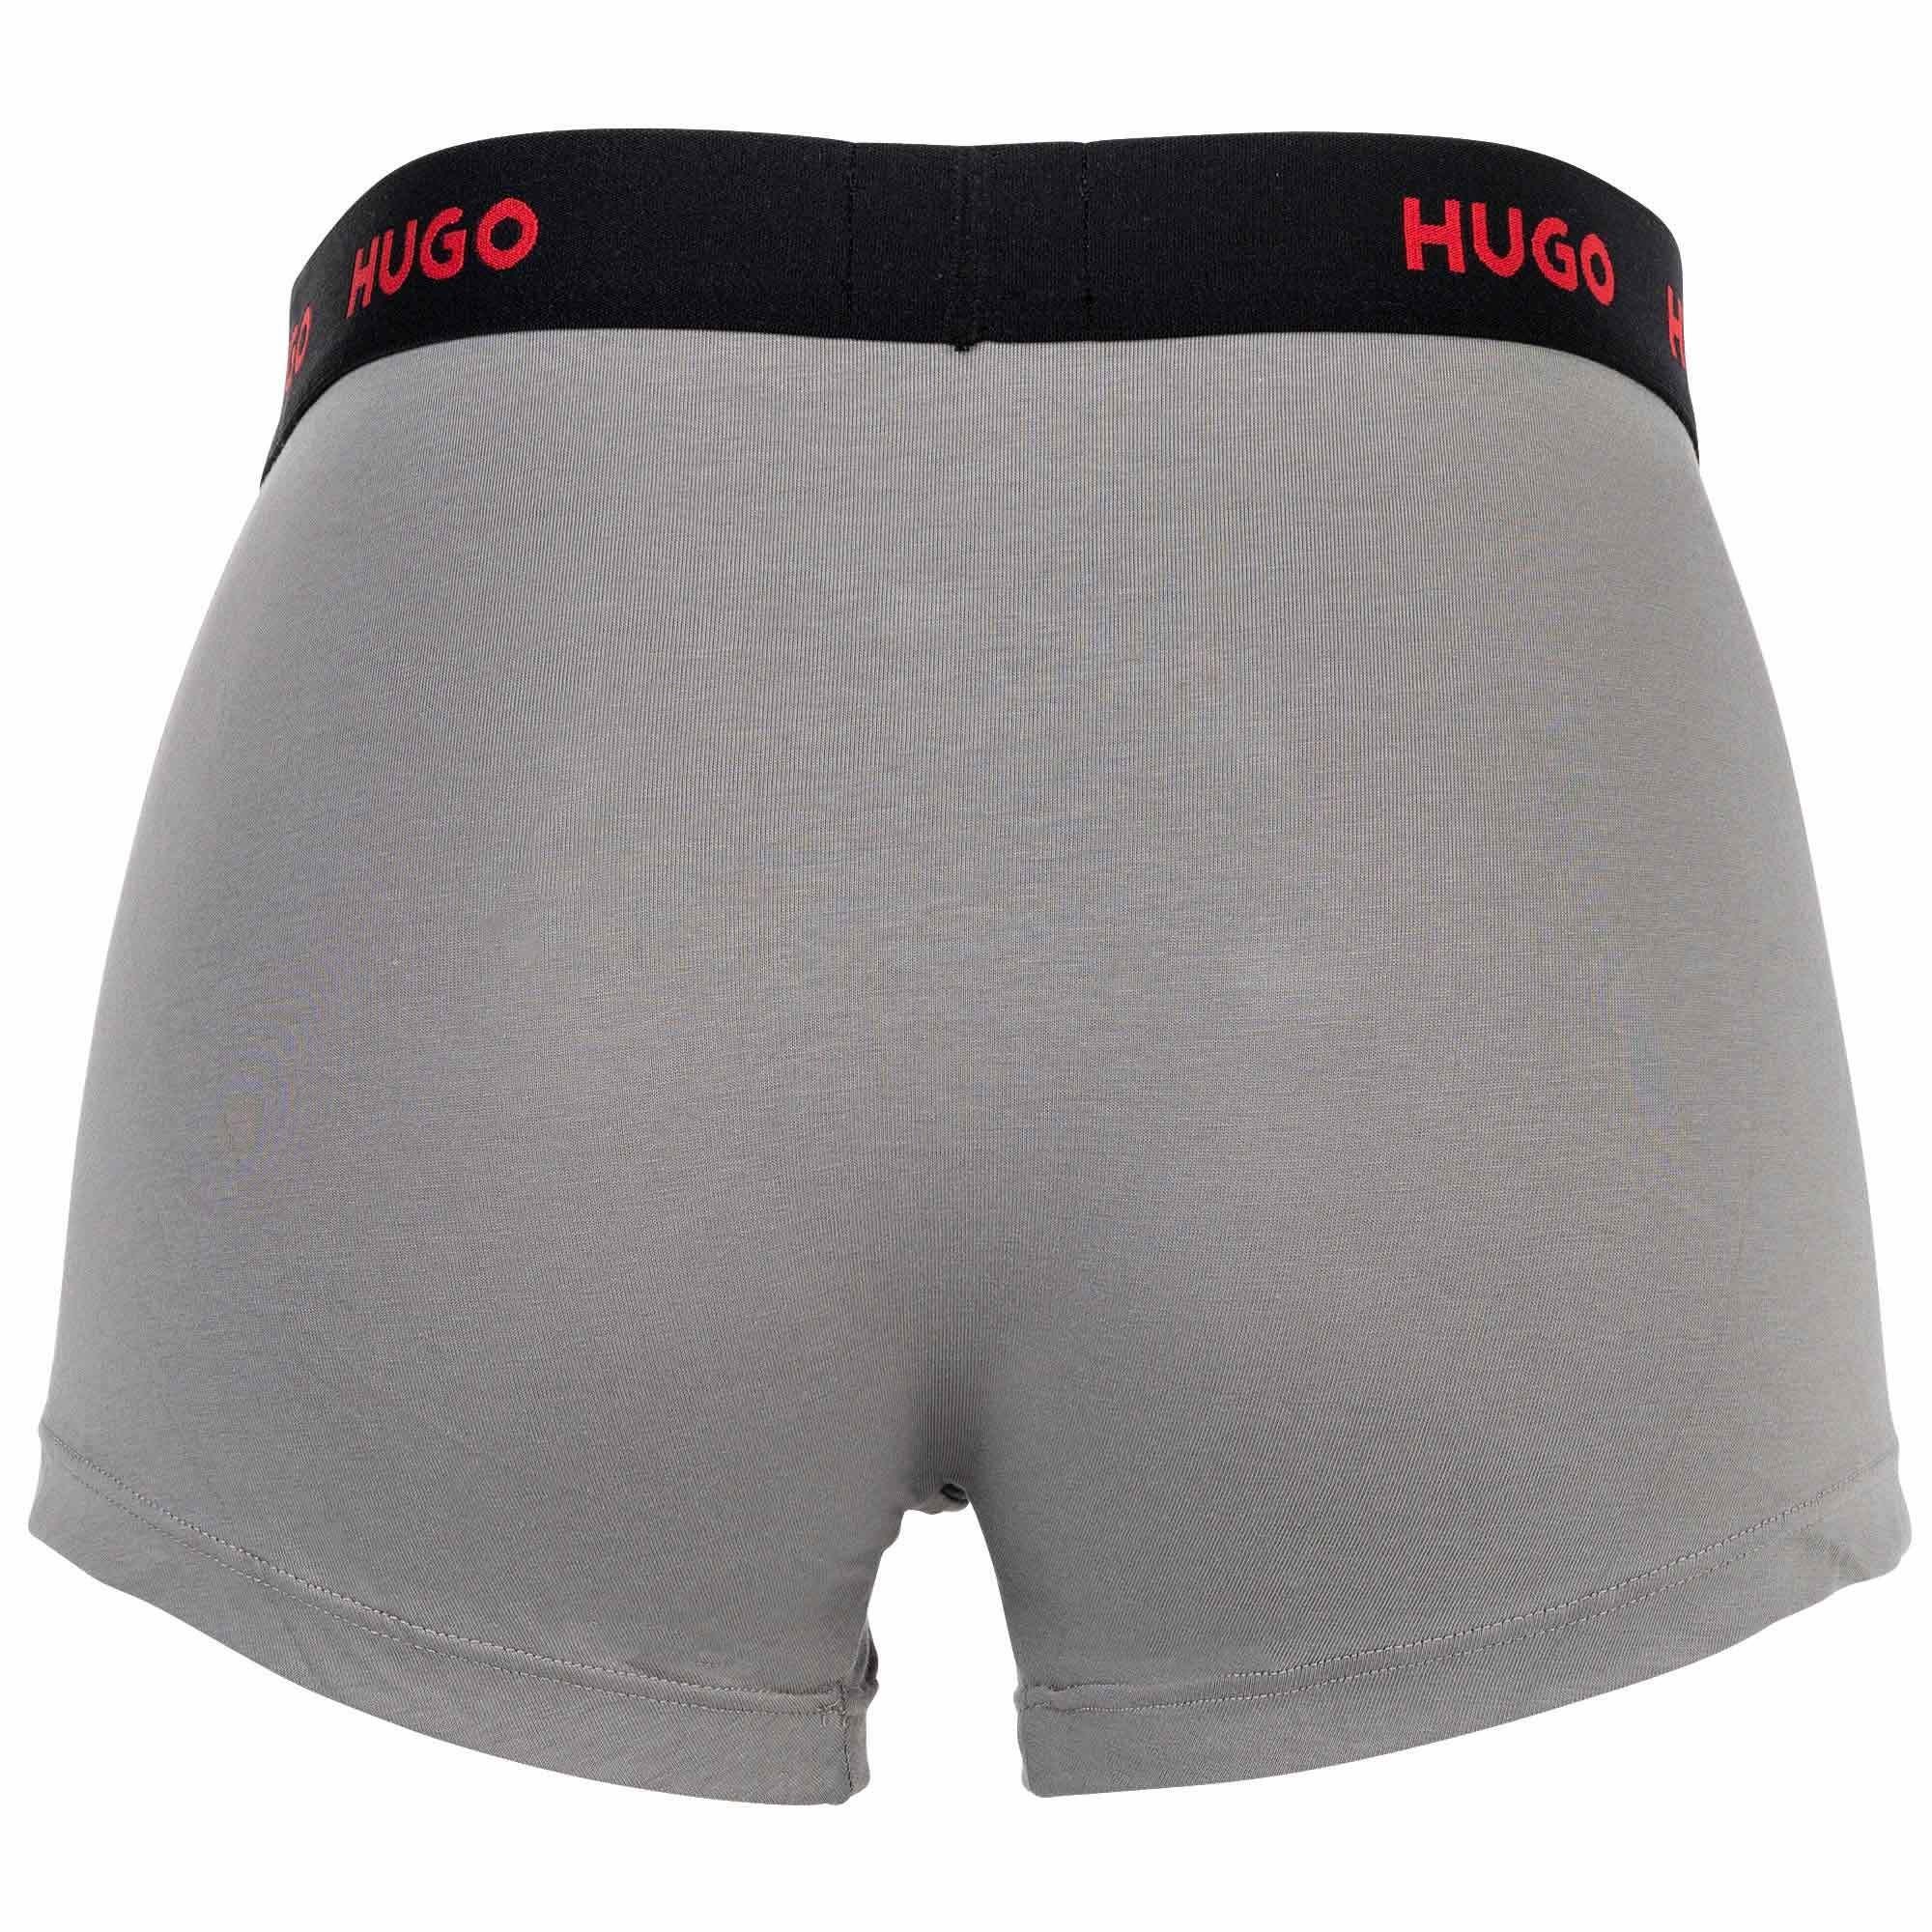 Boxer Boxer Trunks Triplet Grau/Blau 3er Herren HUGO - Shorts, Pack